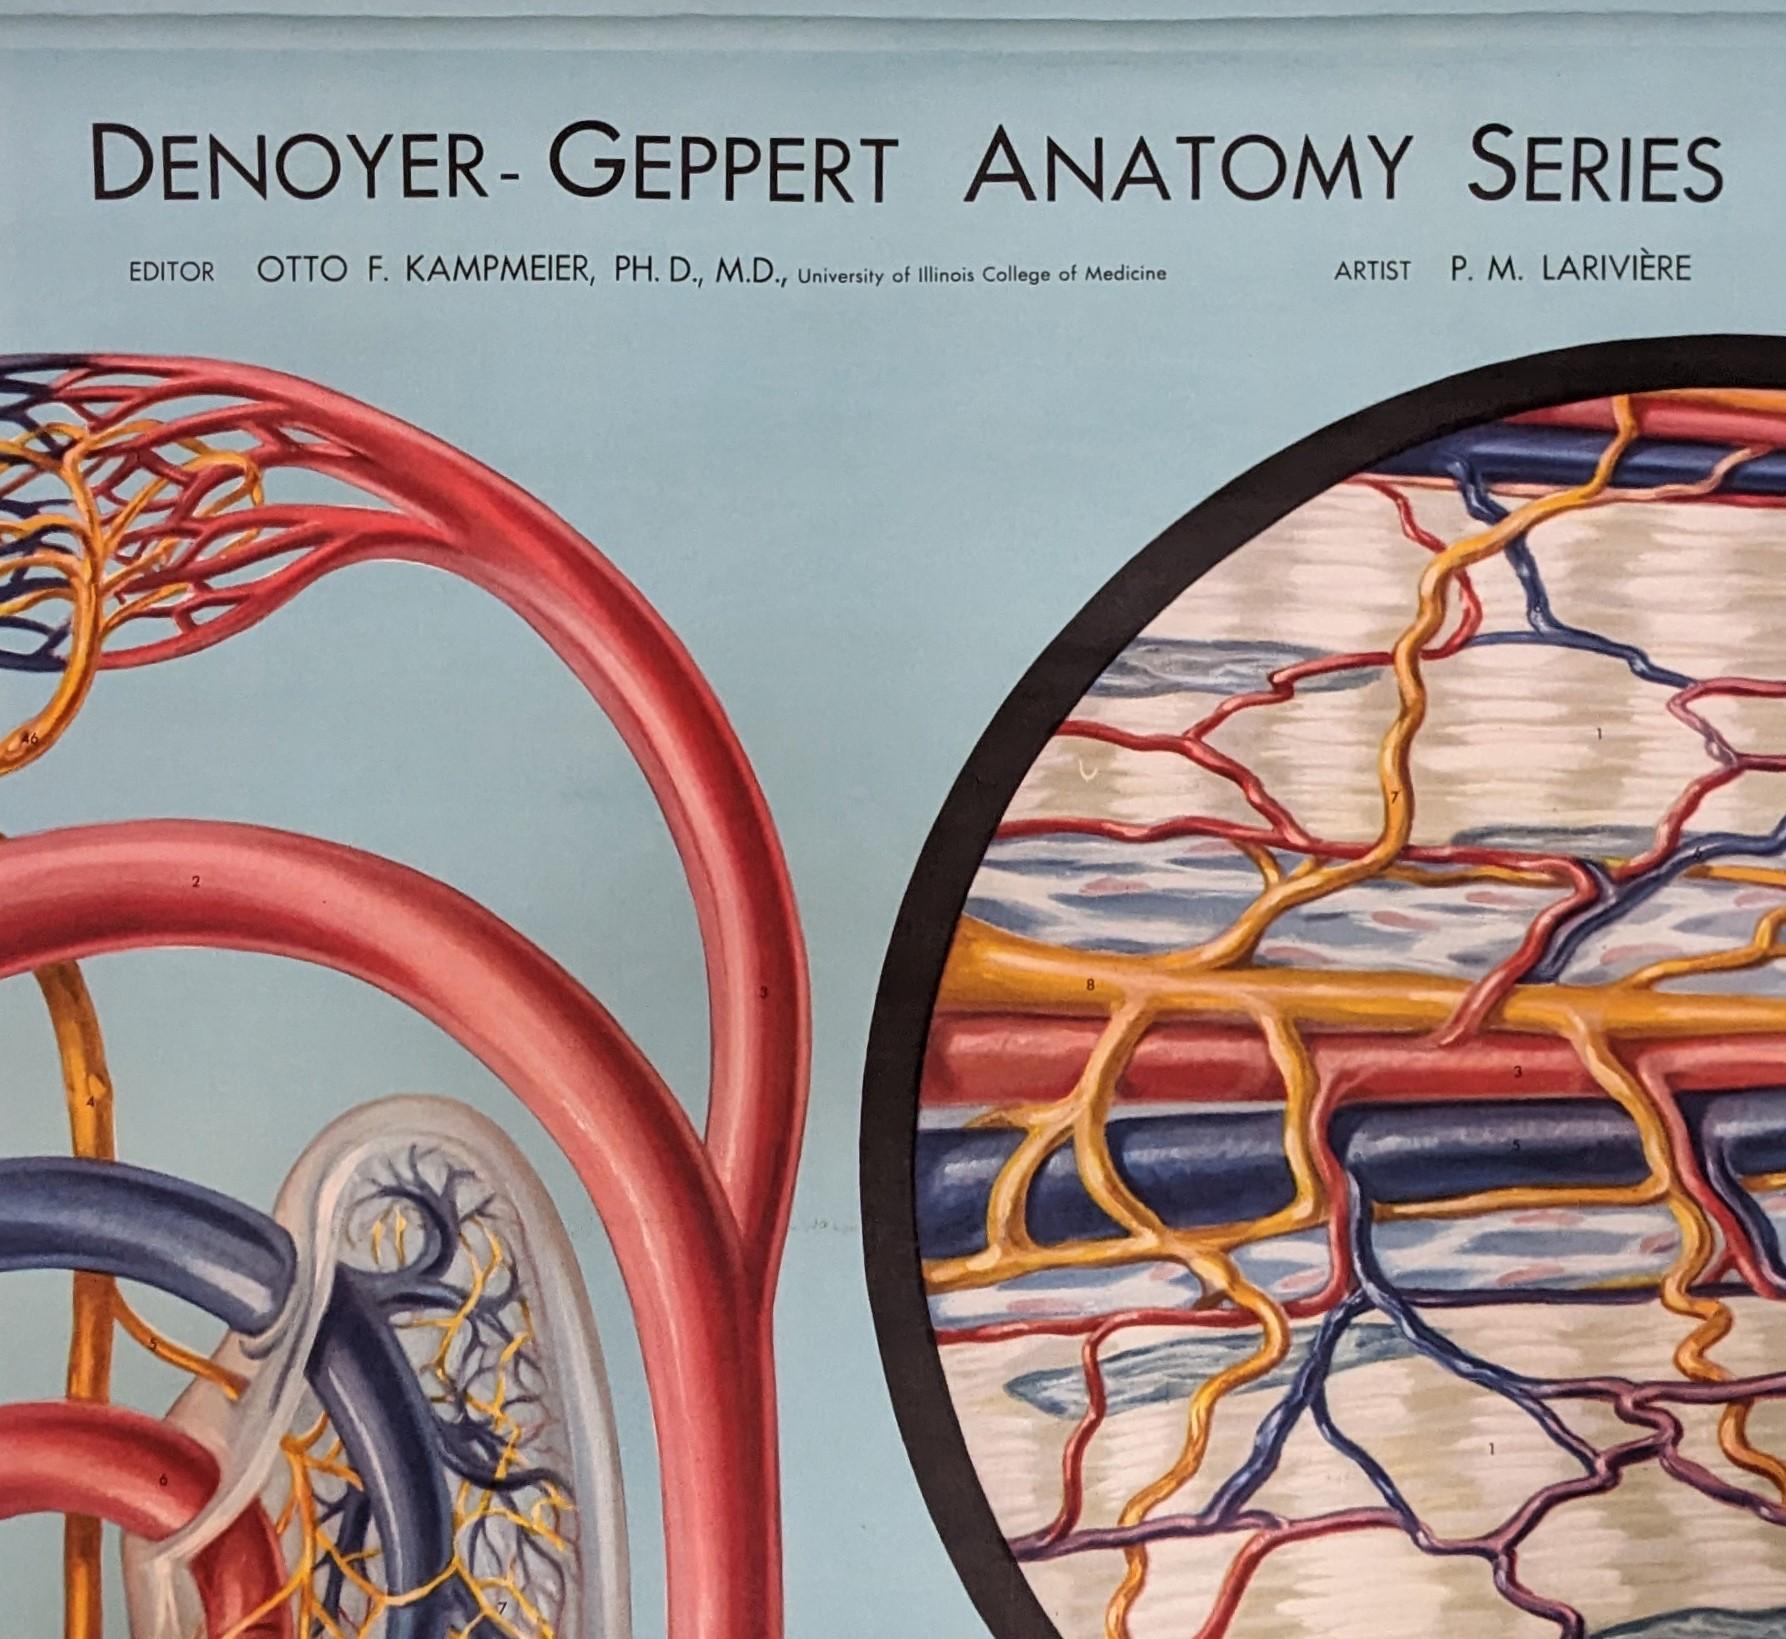 Denoyer-Geppert Anatomie-Diagramm

Gesamtabmessungen: 73 3/4